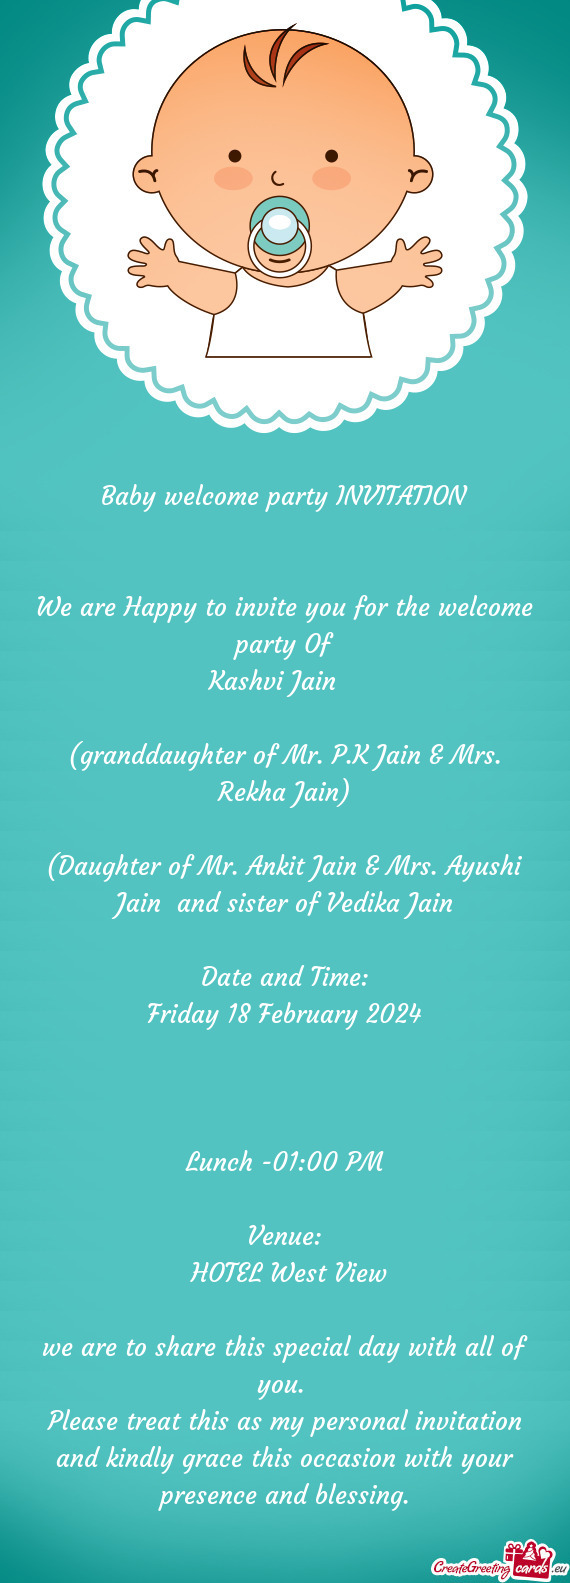 (granddaughter of Mr. P.K Jain & Mrs. Rekha Jain)